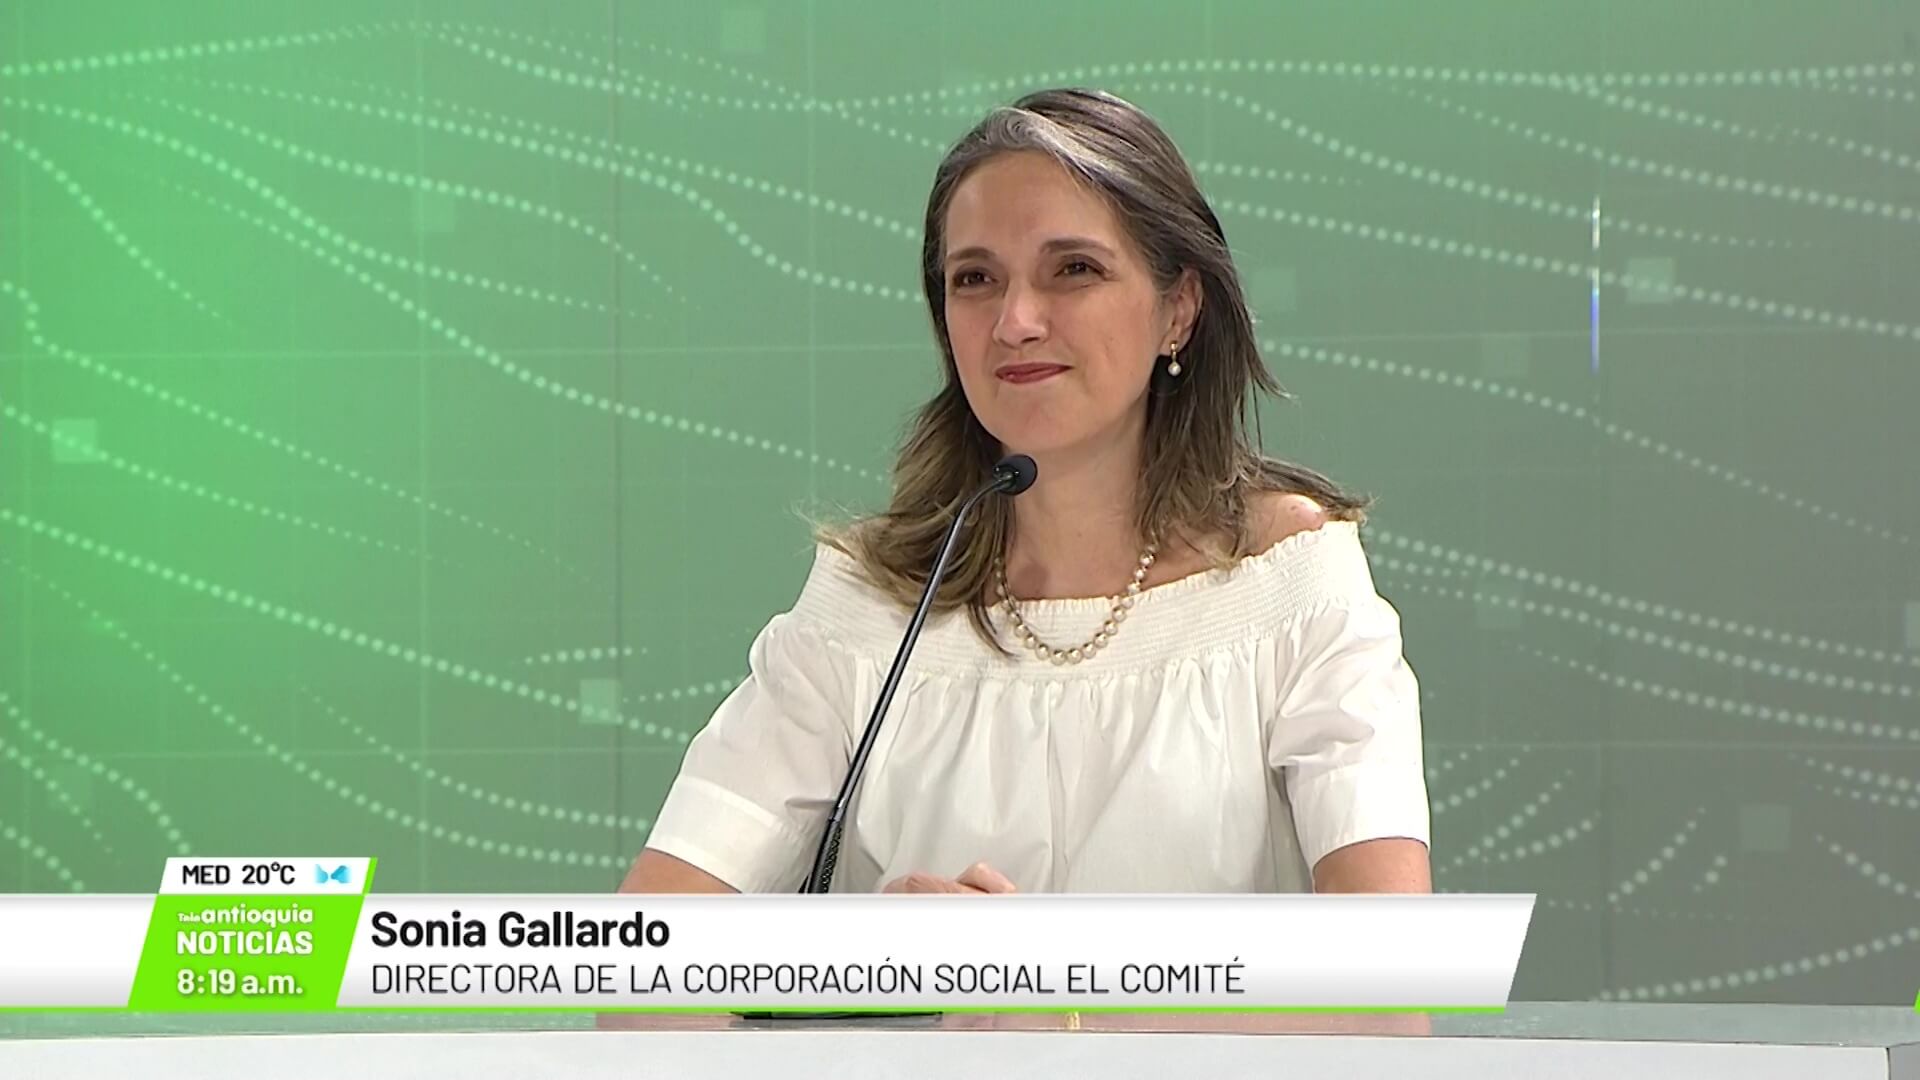 Sonia Gallardo, directora de la corporación social El Comité